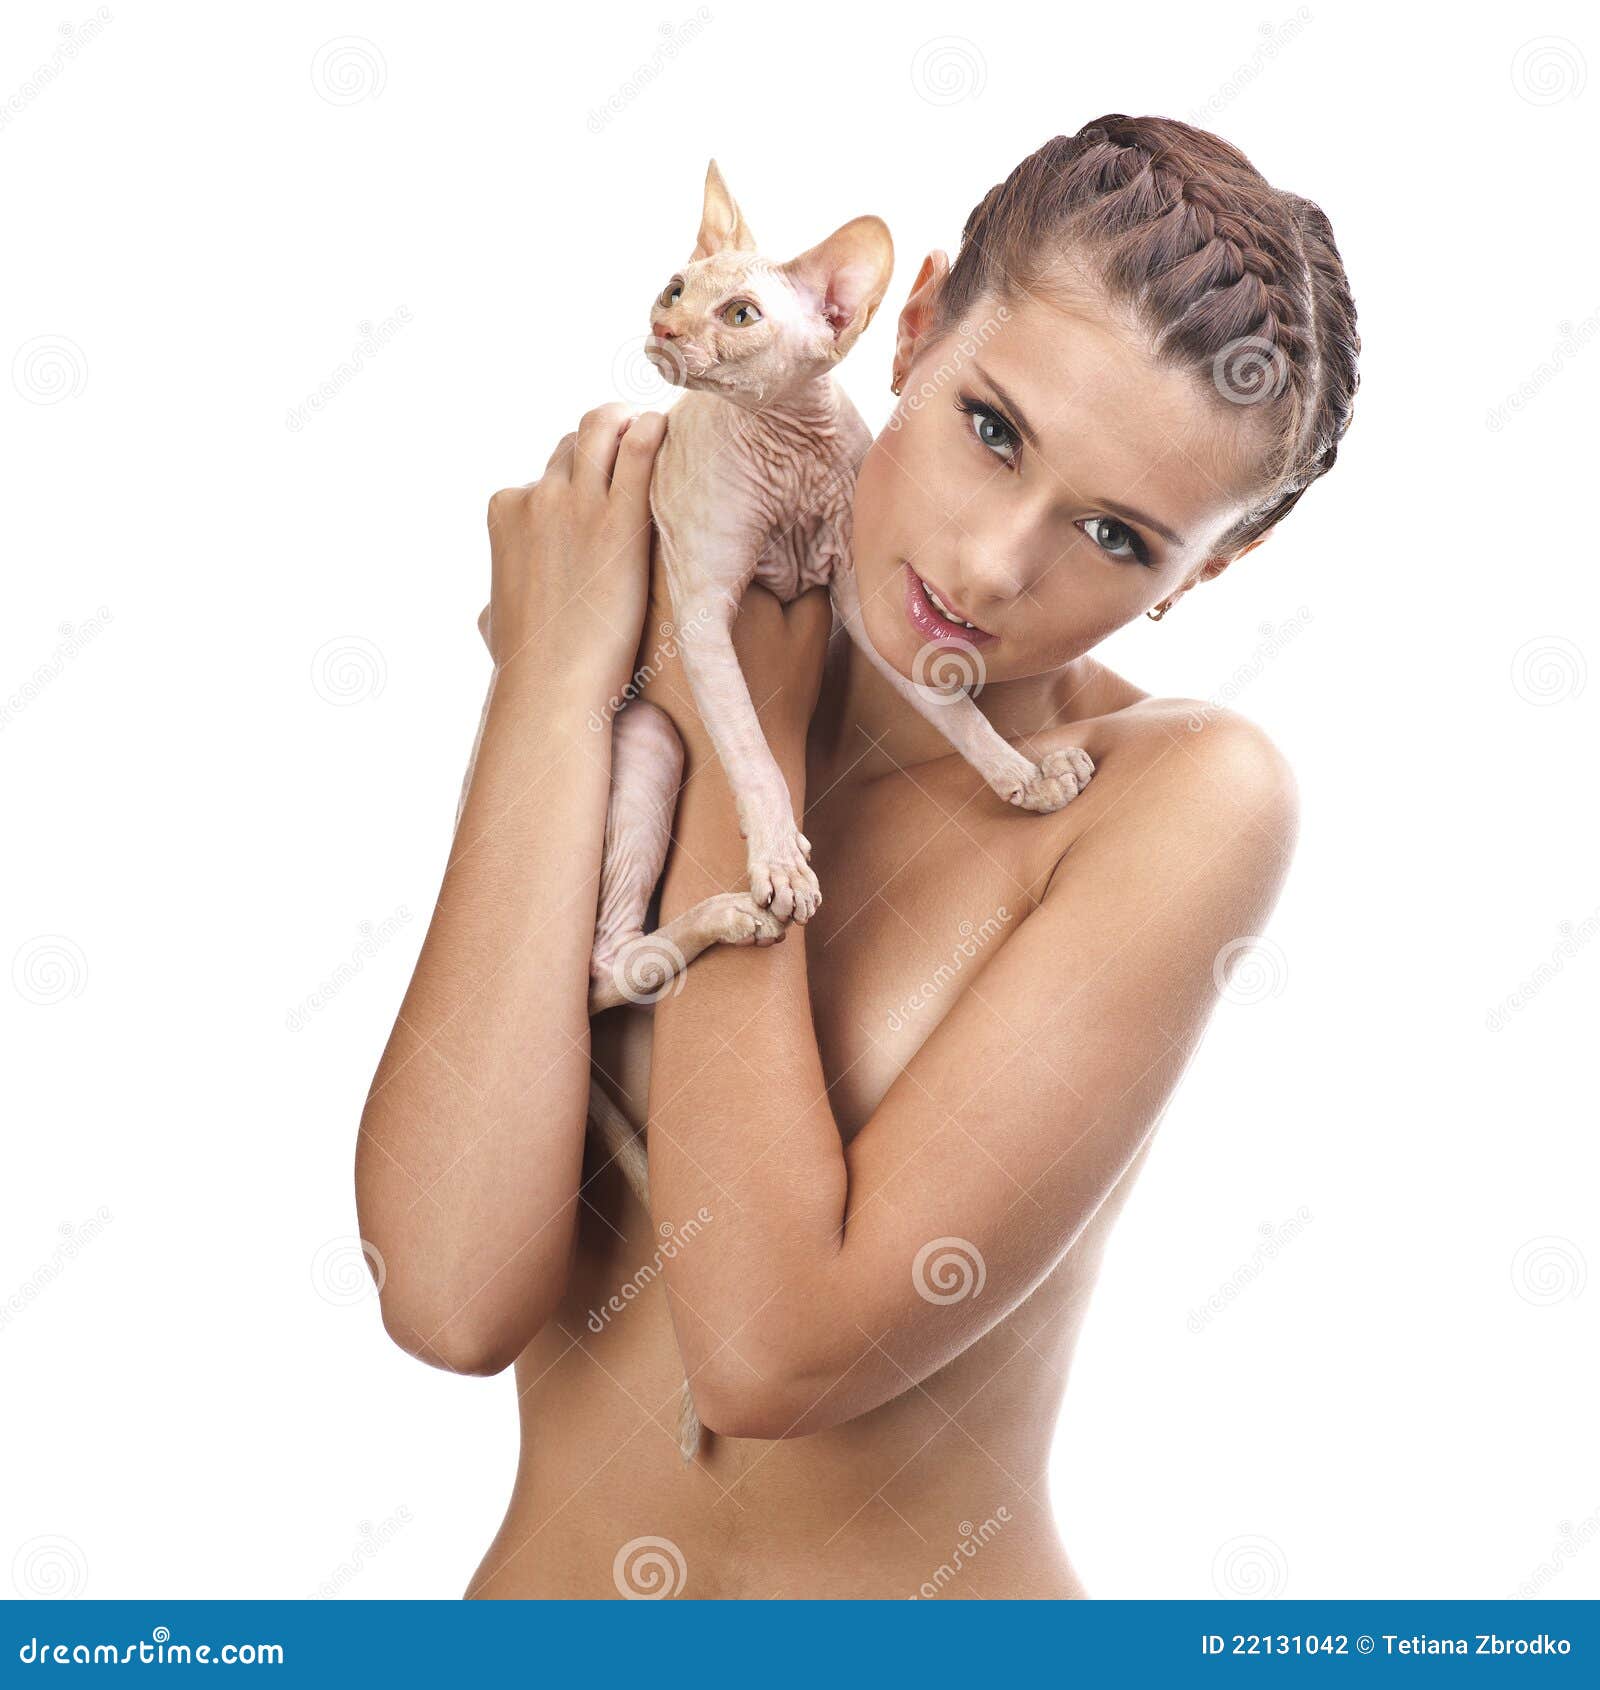 Girl naked cat 